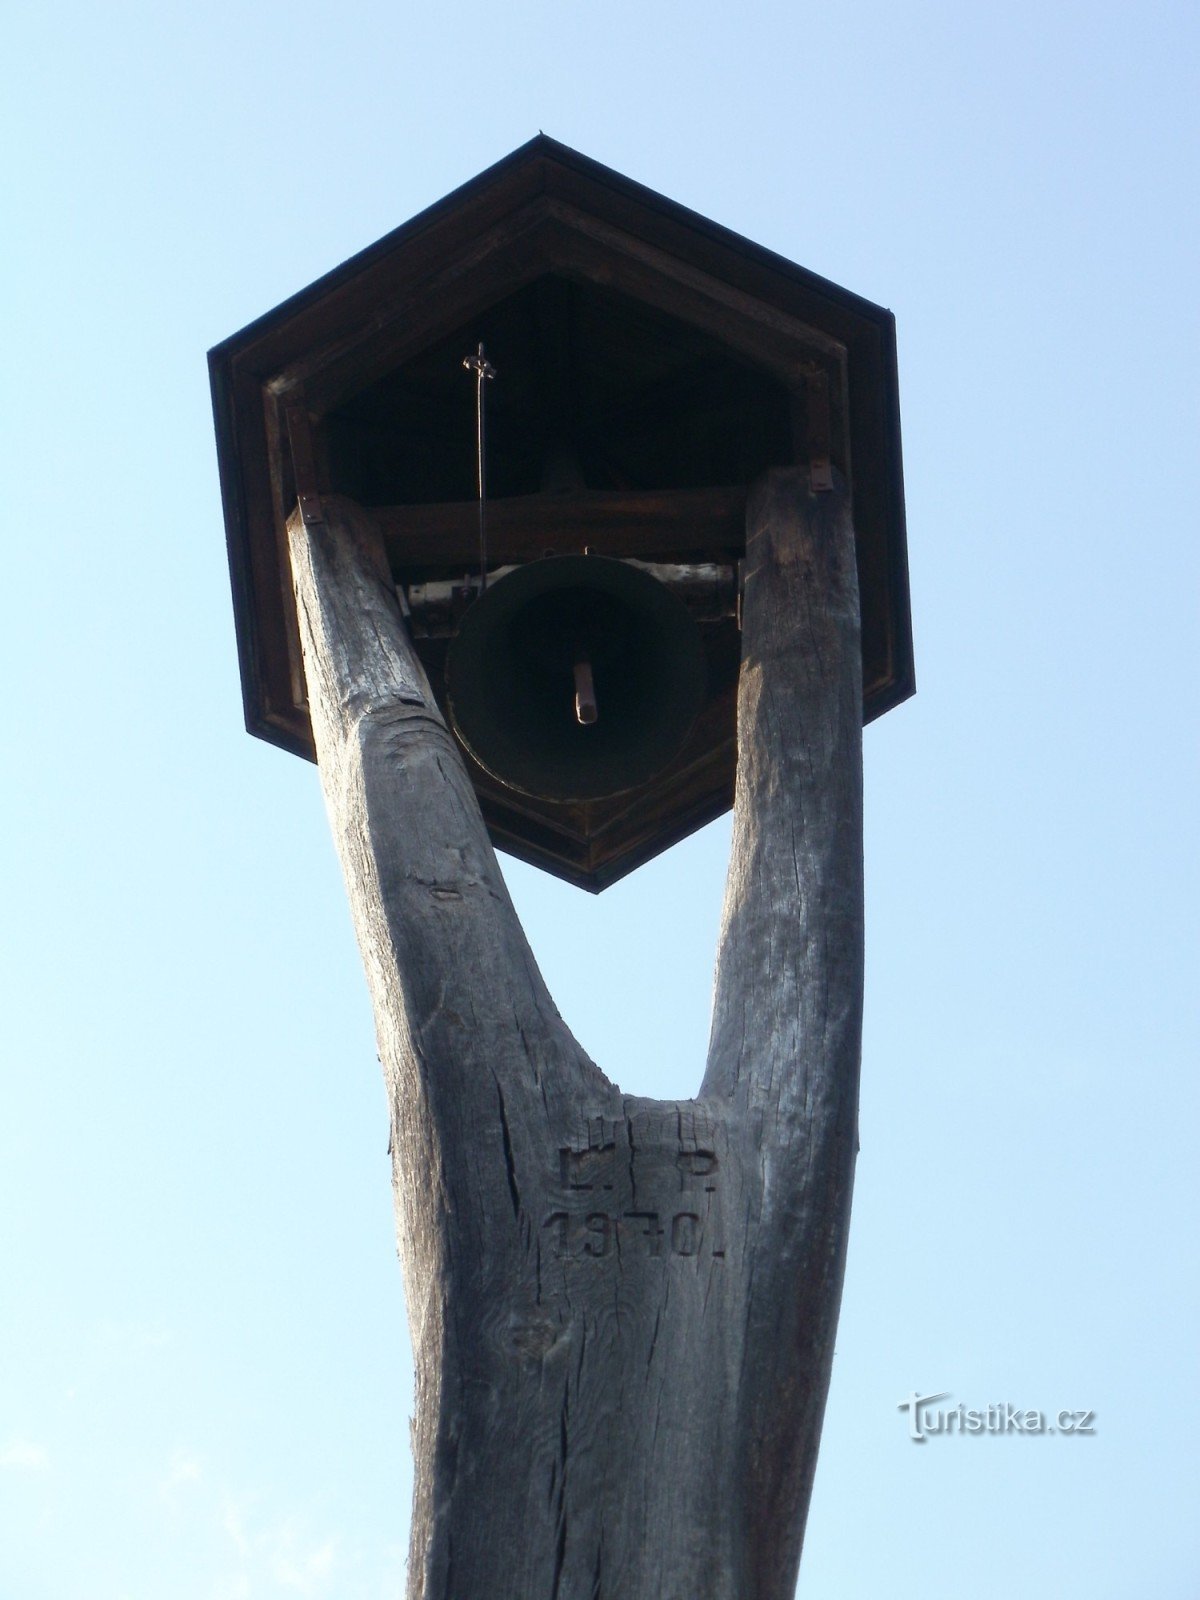 Градец Кралове - колокольня и памятник распятию в Векошах